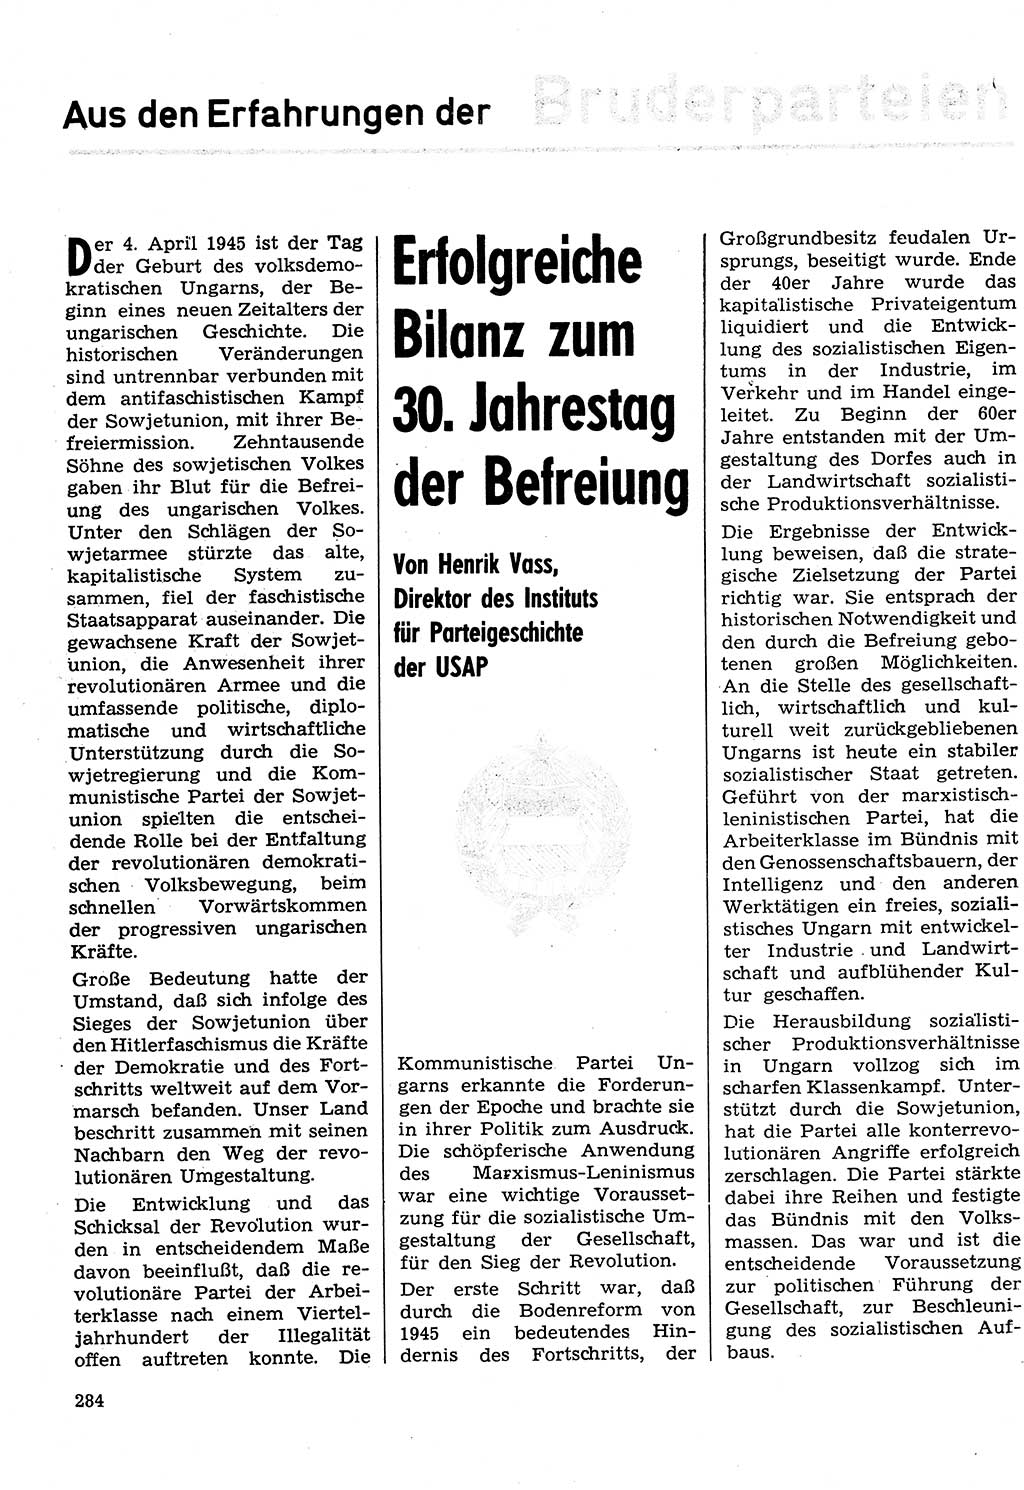 Neuer Weg (NW), Organ des Zentralkomitees (ZK) der SED (Sozialistische Einheitspartei Deutschlands) für Fragen des Parteilebens, 30. Jahrgang [Deutsche Demokratische Republik (DDR)] 1975, Seite 284 (NW ZK SED DDR 1975, S. 284)